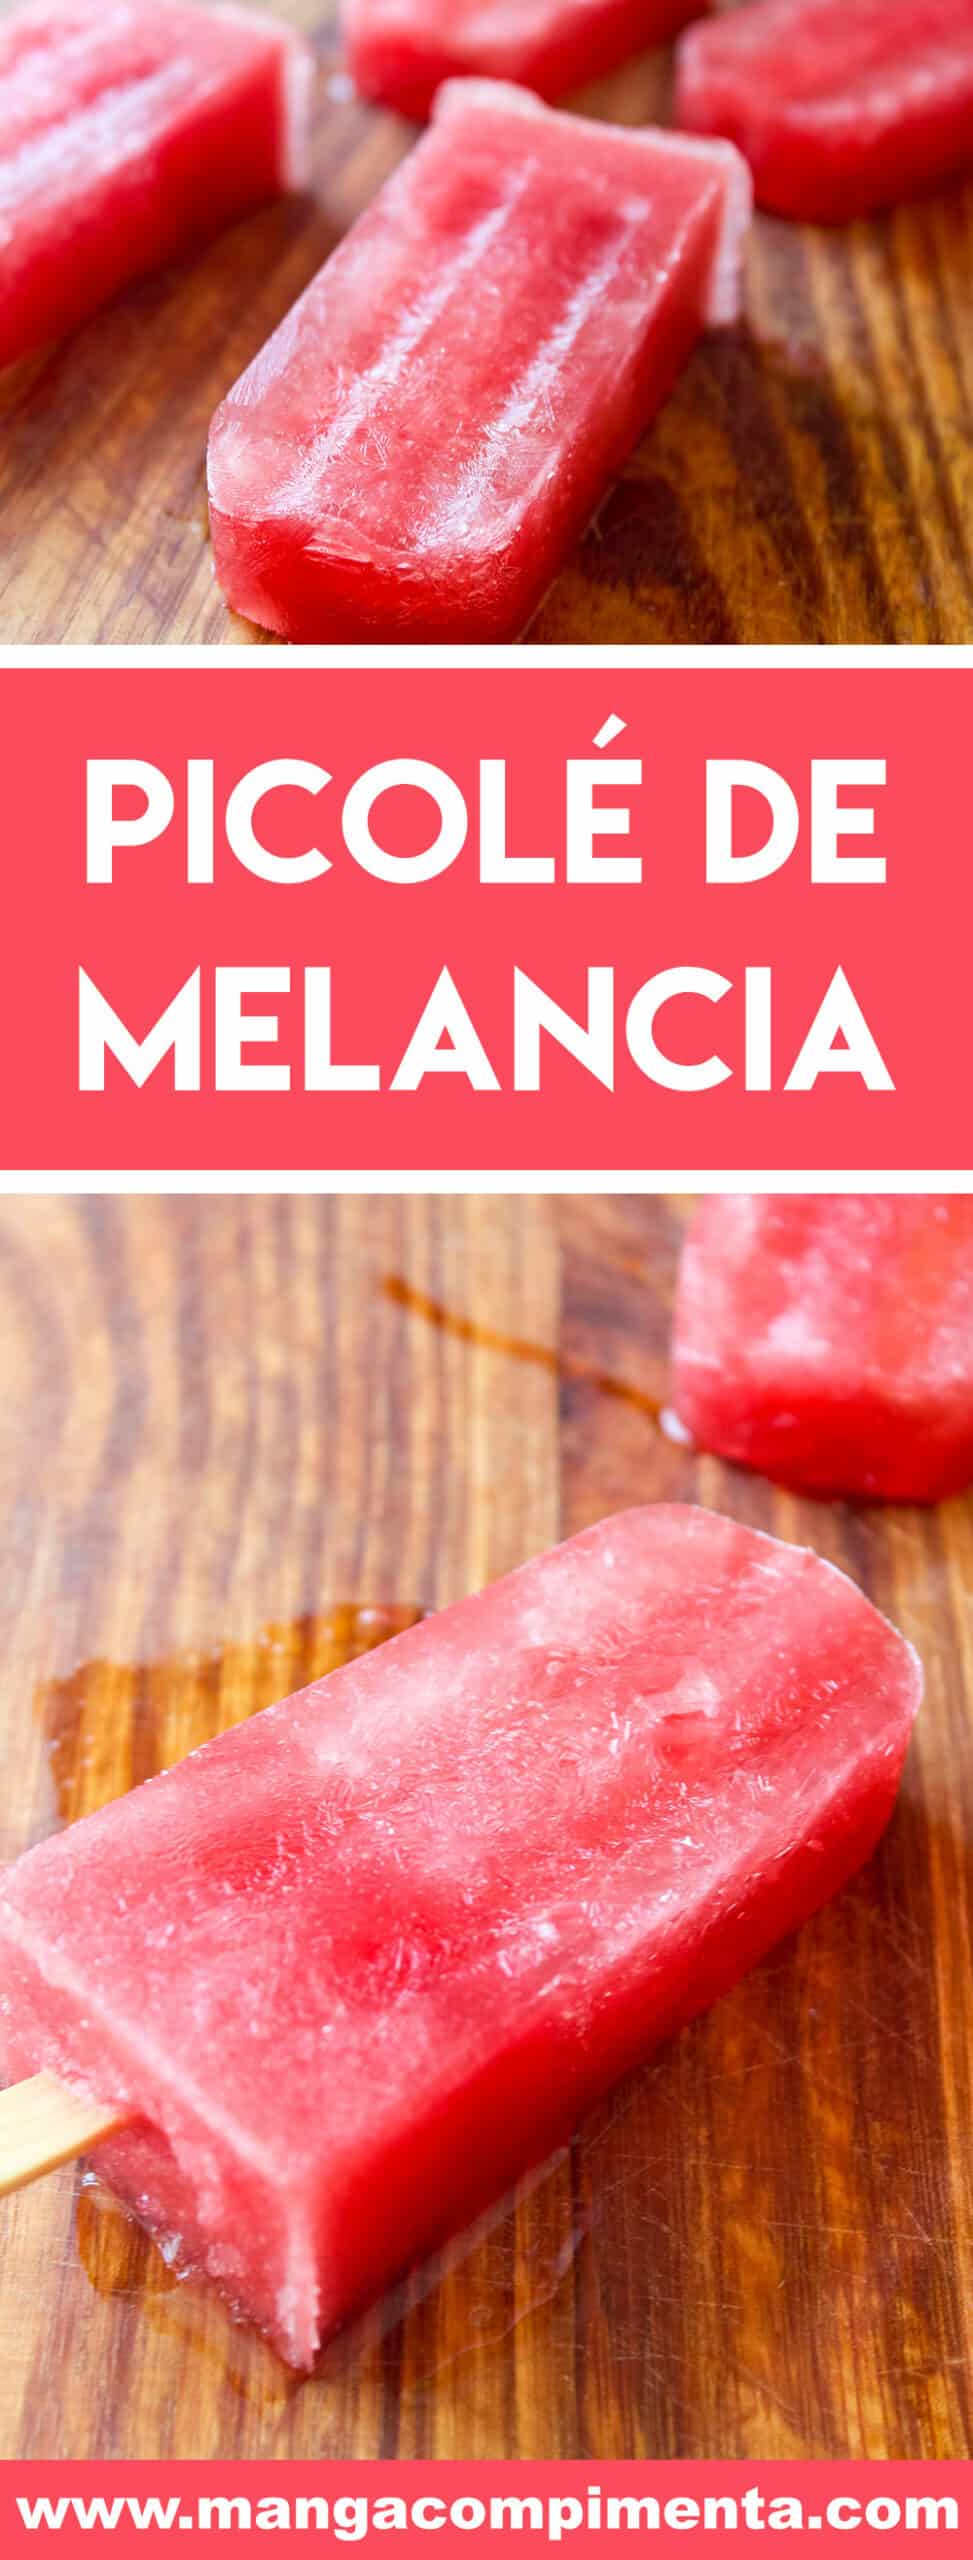 Receita de Picolé de Melancia Caseiro - prepare esse doce refrescante nesse verão!